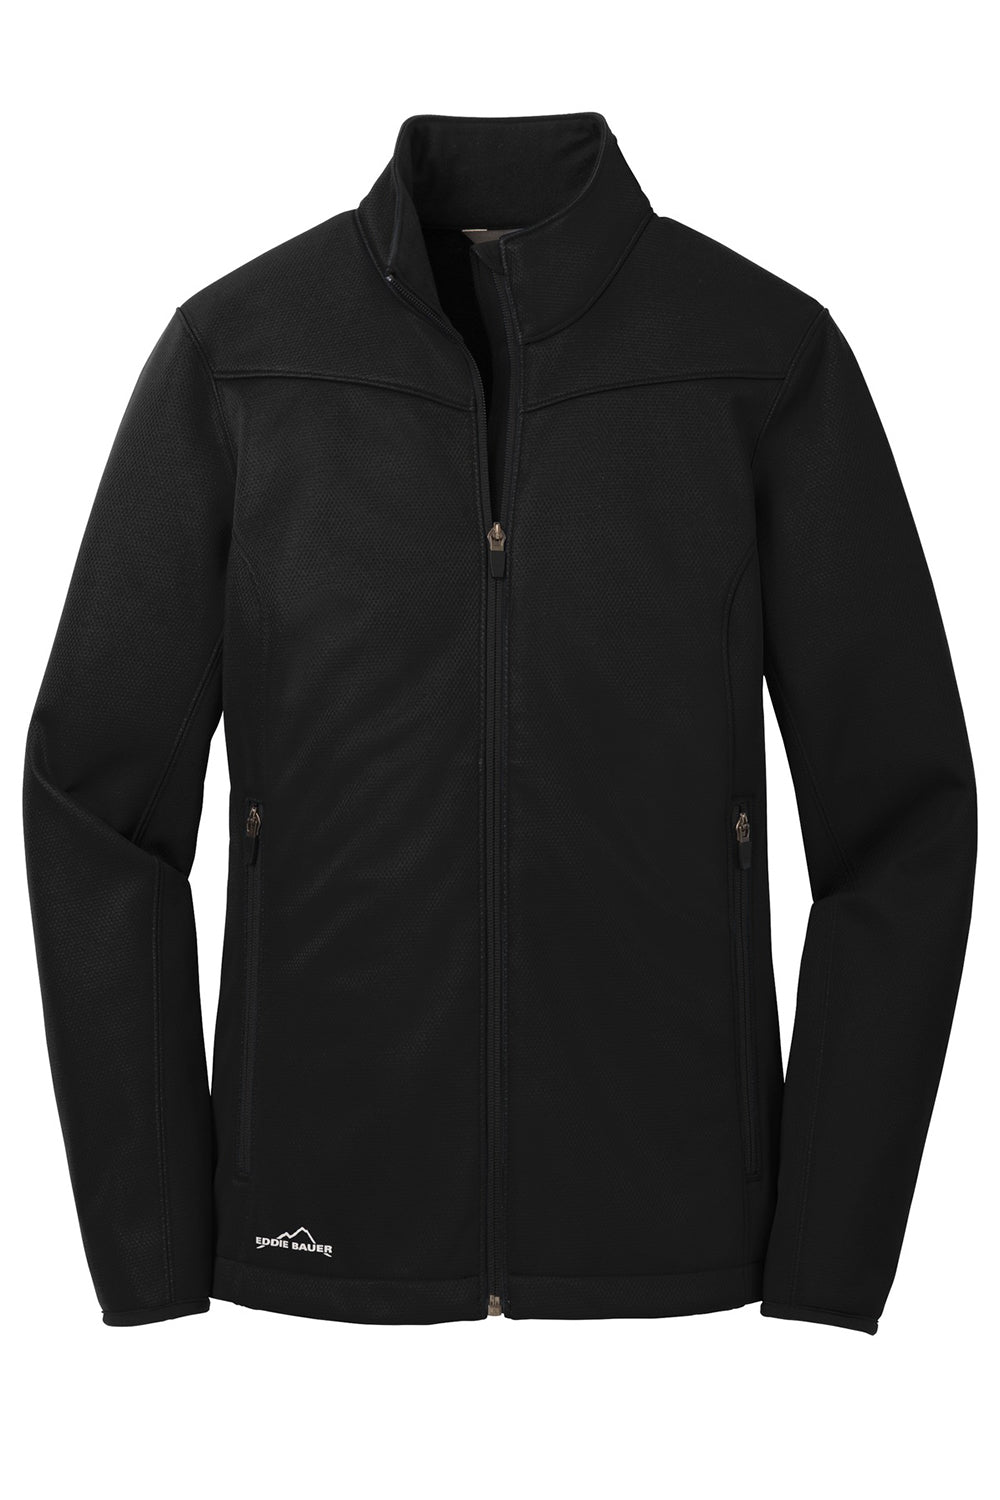 Eddie Bauer EB539 Womens Waterproof Full Zip Jacket Black Flat Front